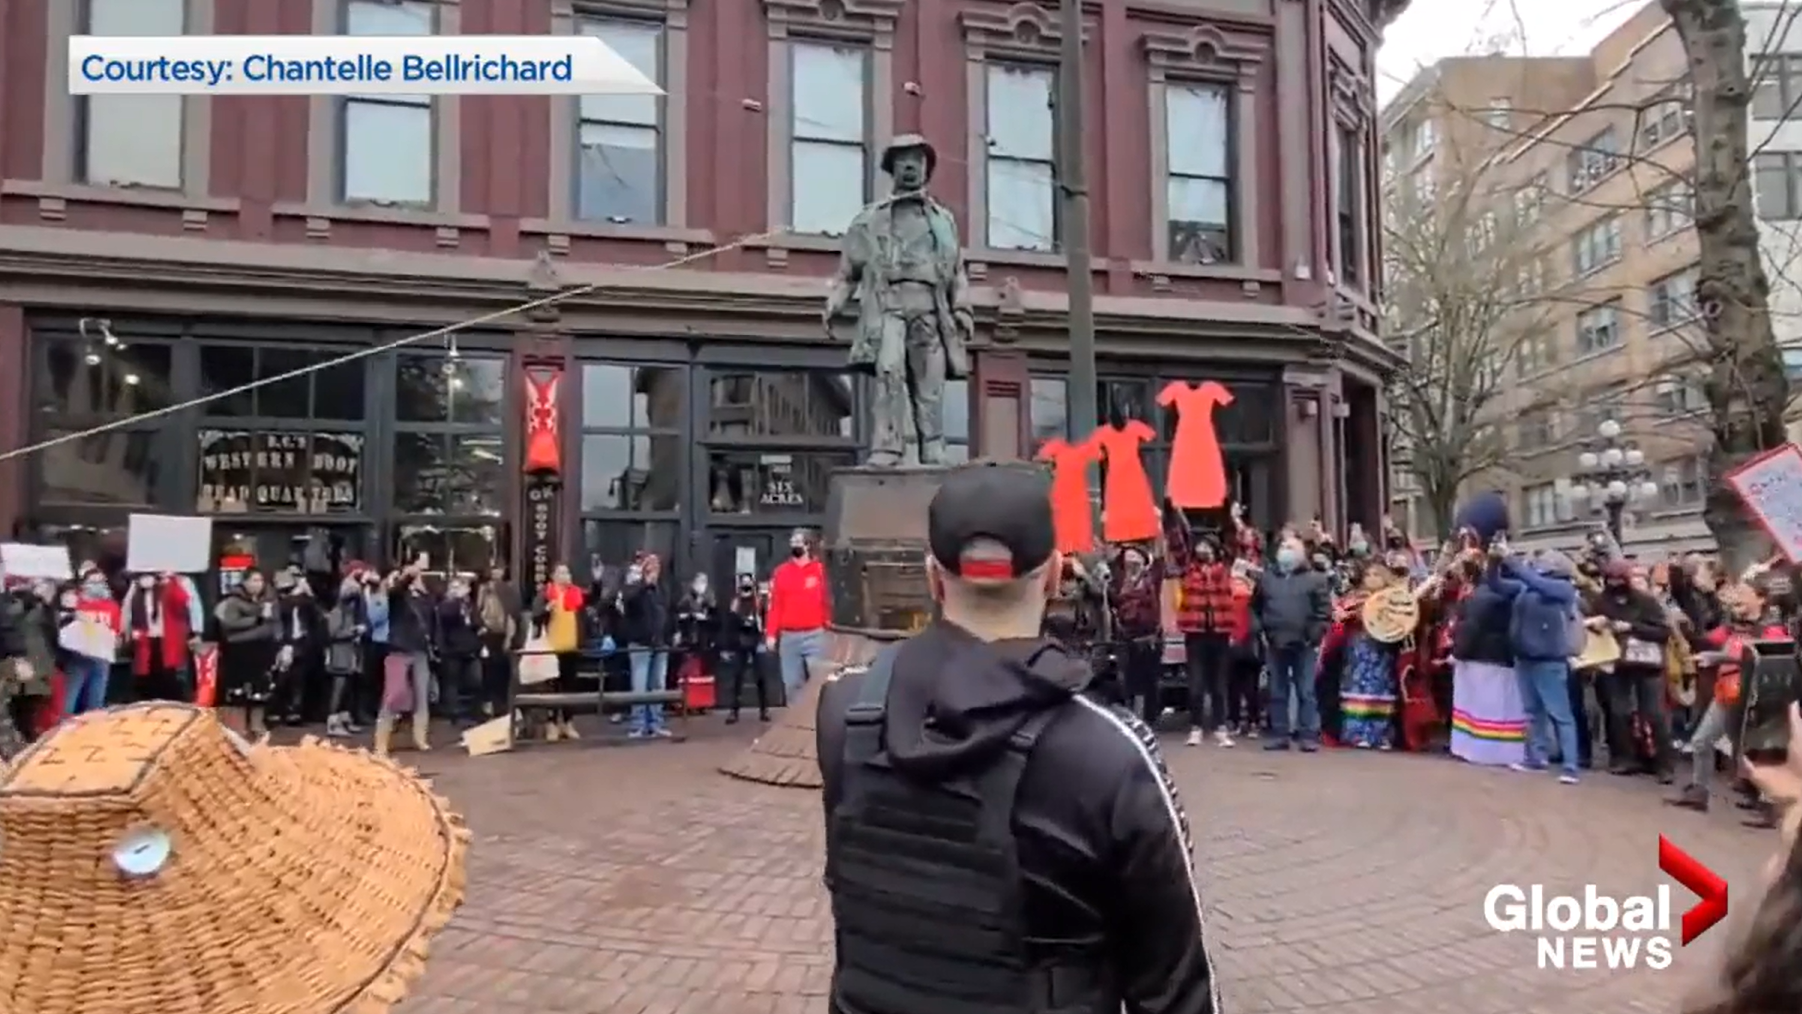 14일(현지시간) 캐나다 밴쿠버 개스타운 메이플트리 광장에 있는 ‘개시 잭’ 동상이 ‘여성 추모 행진’ 참가자들에 의해 목 부분에 밧줄이 감긴 채 강제로 철거되고 있다. 글로벌뉴스 홈페이지 캡처